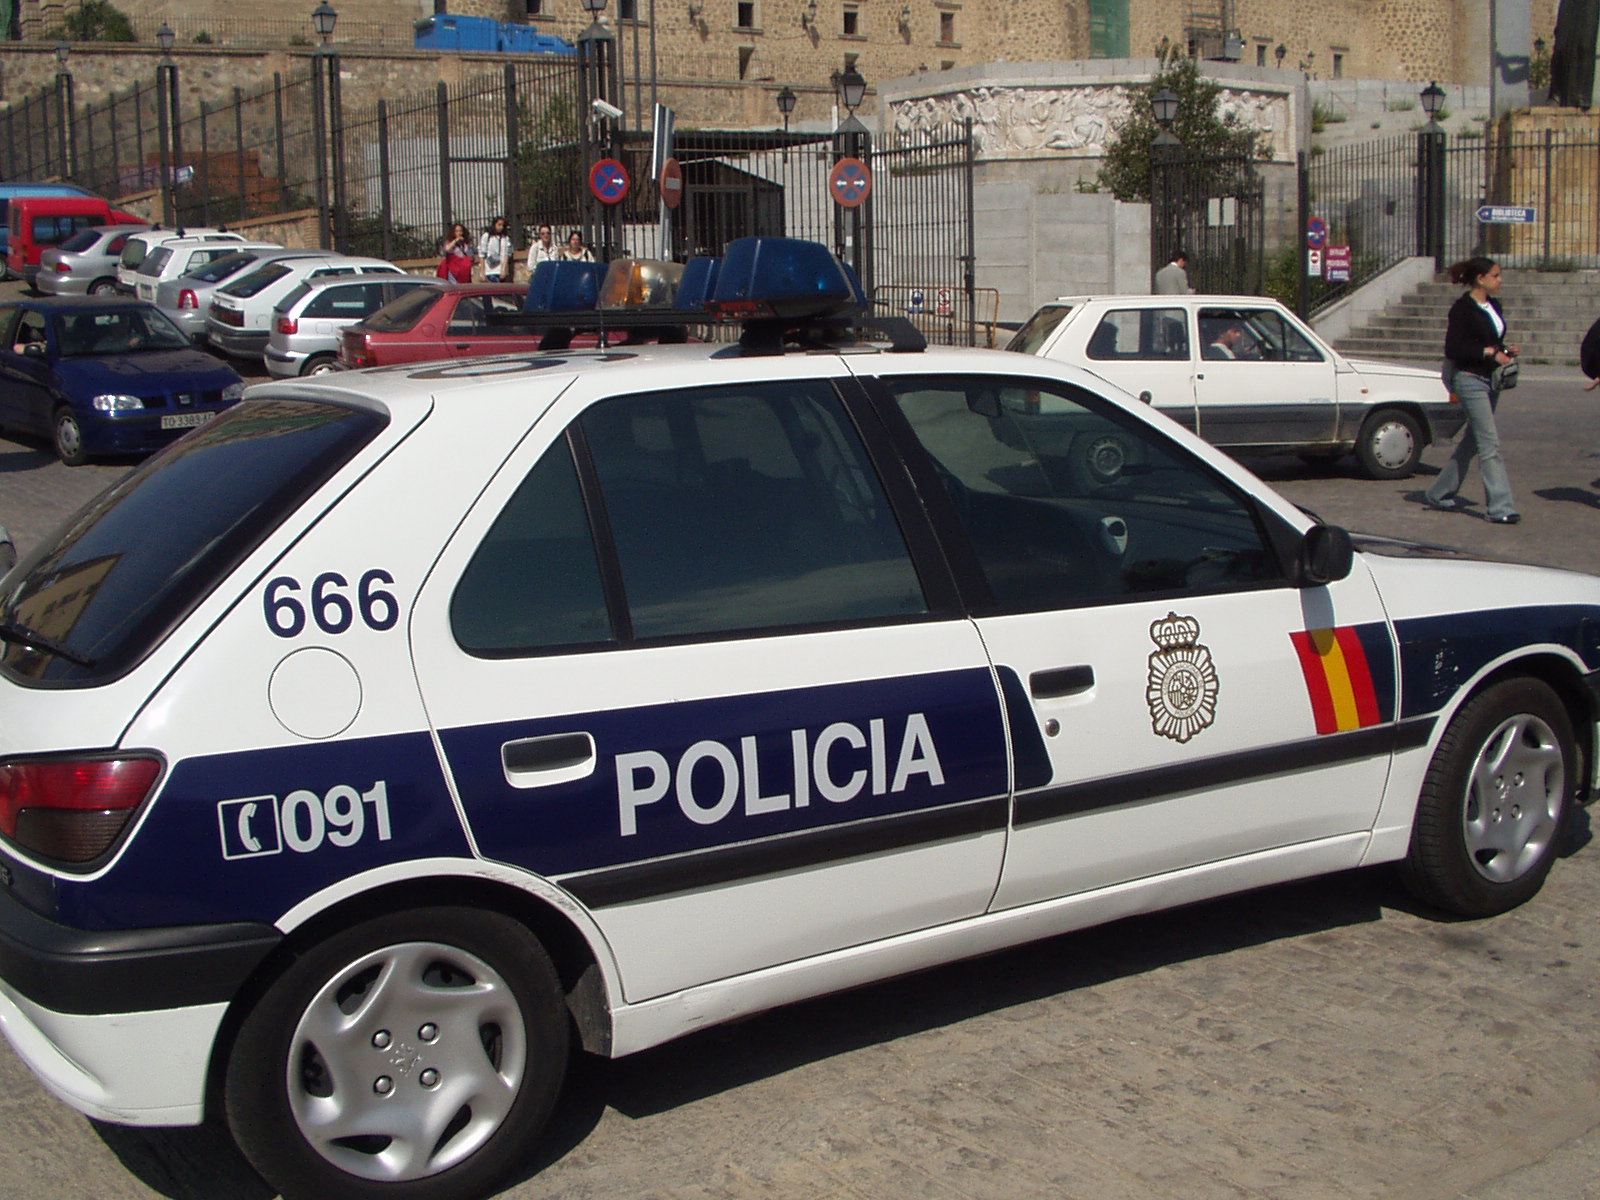 Συνελήφθη Μαροκινός που είχε εγχειρίδιο για βομβιστές καμικάζι